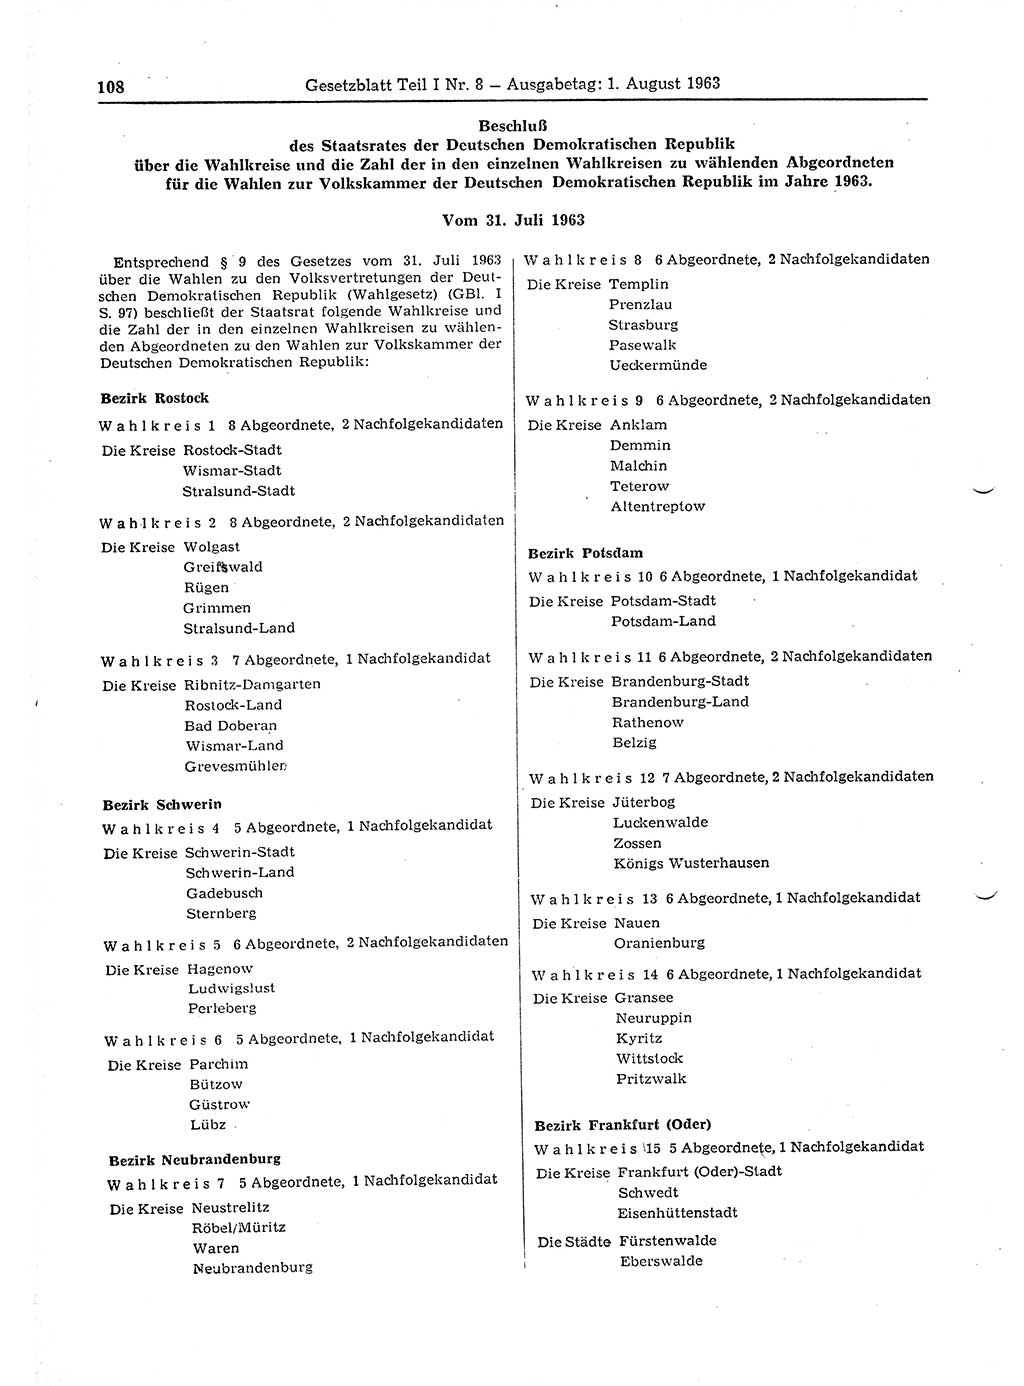 Gesetzblatt (GBl.) der Deutschen Demokratischen Republik (DDR) Teil Ⅰ 1963, Seite 108 (GBl. DDR Ⅰ 1963, S. 108)